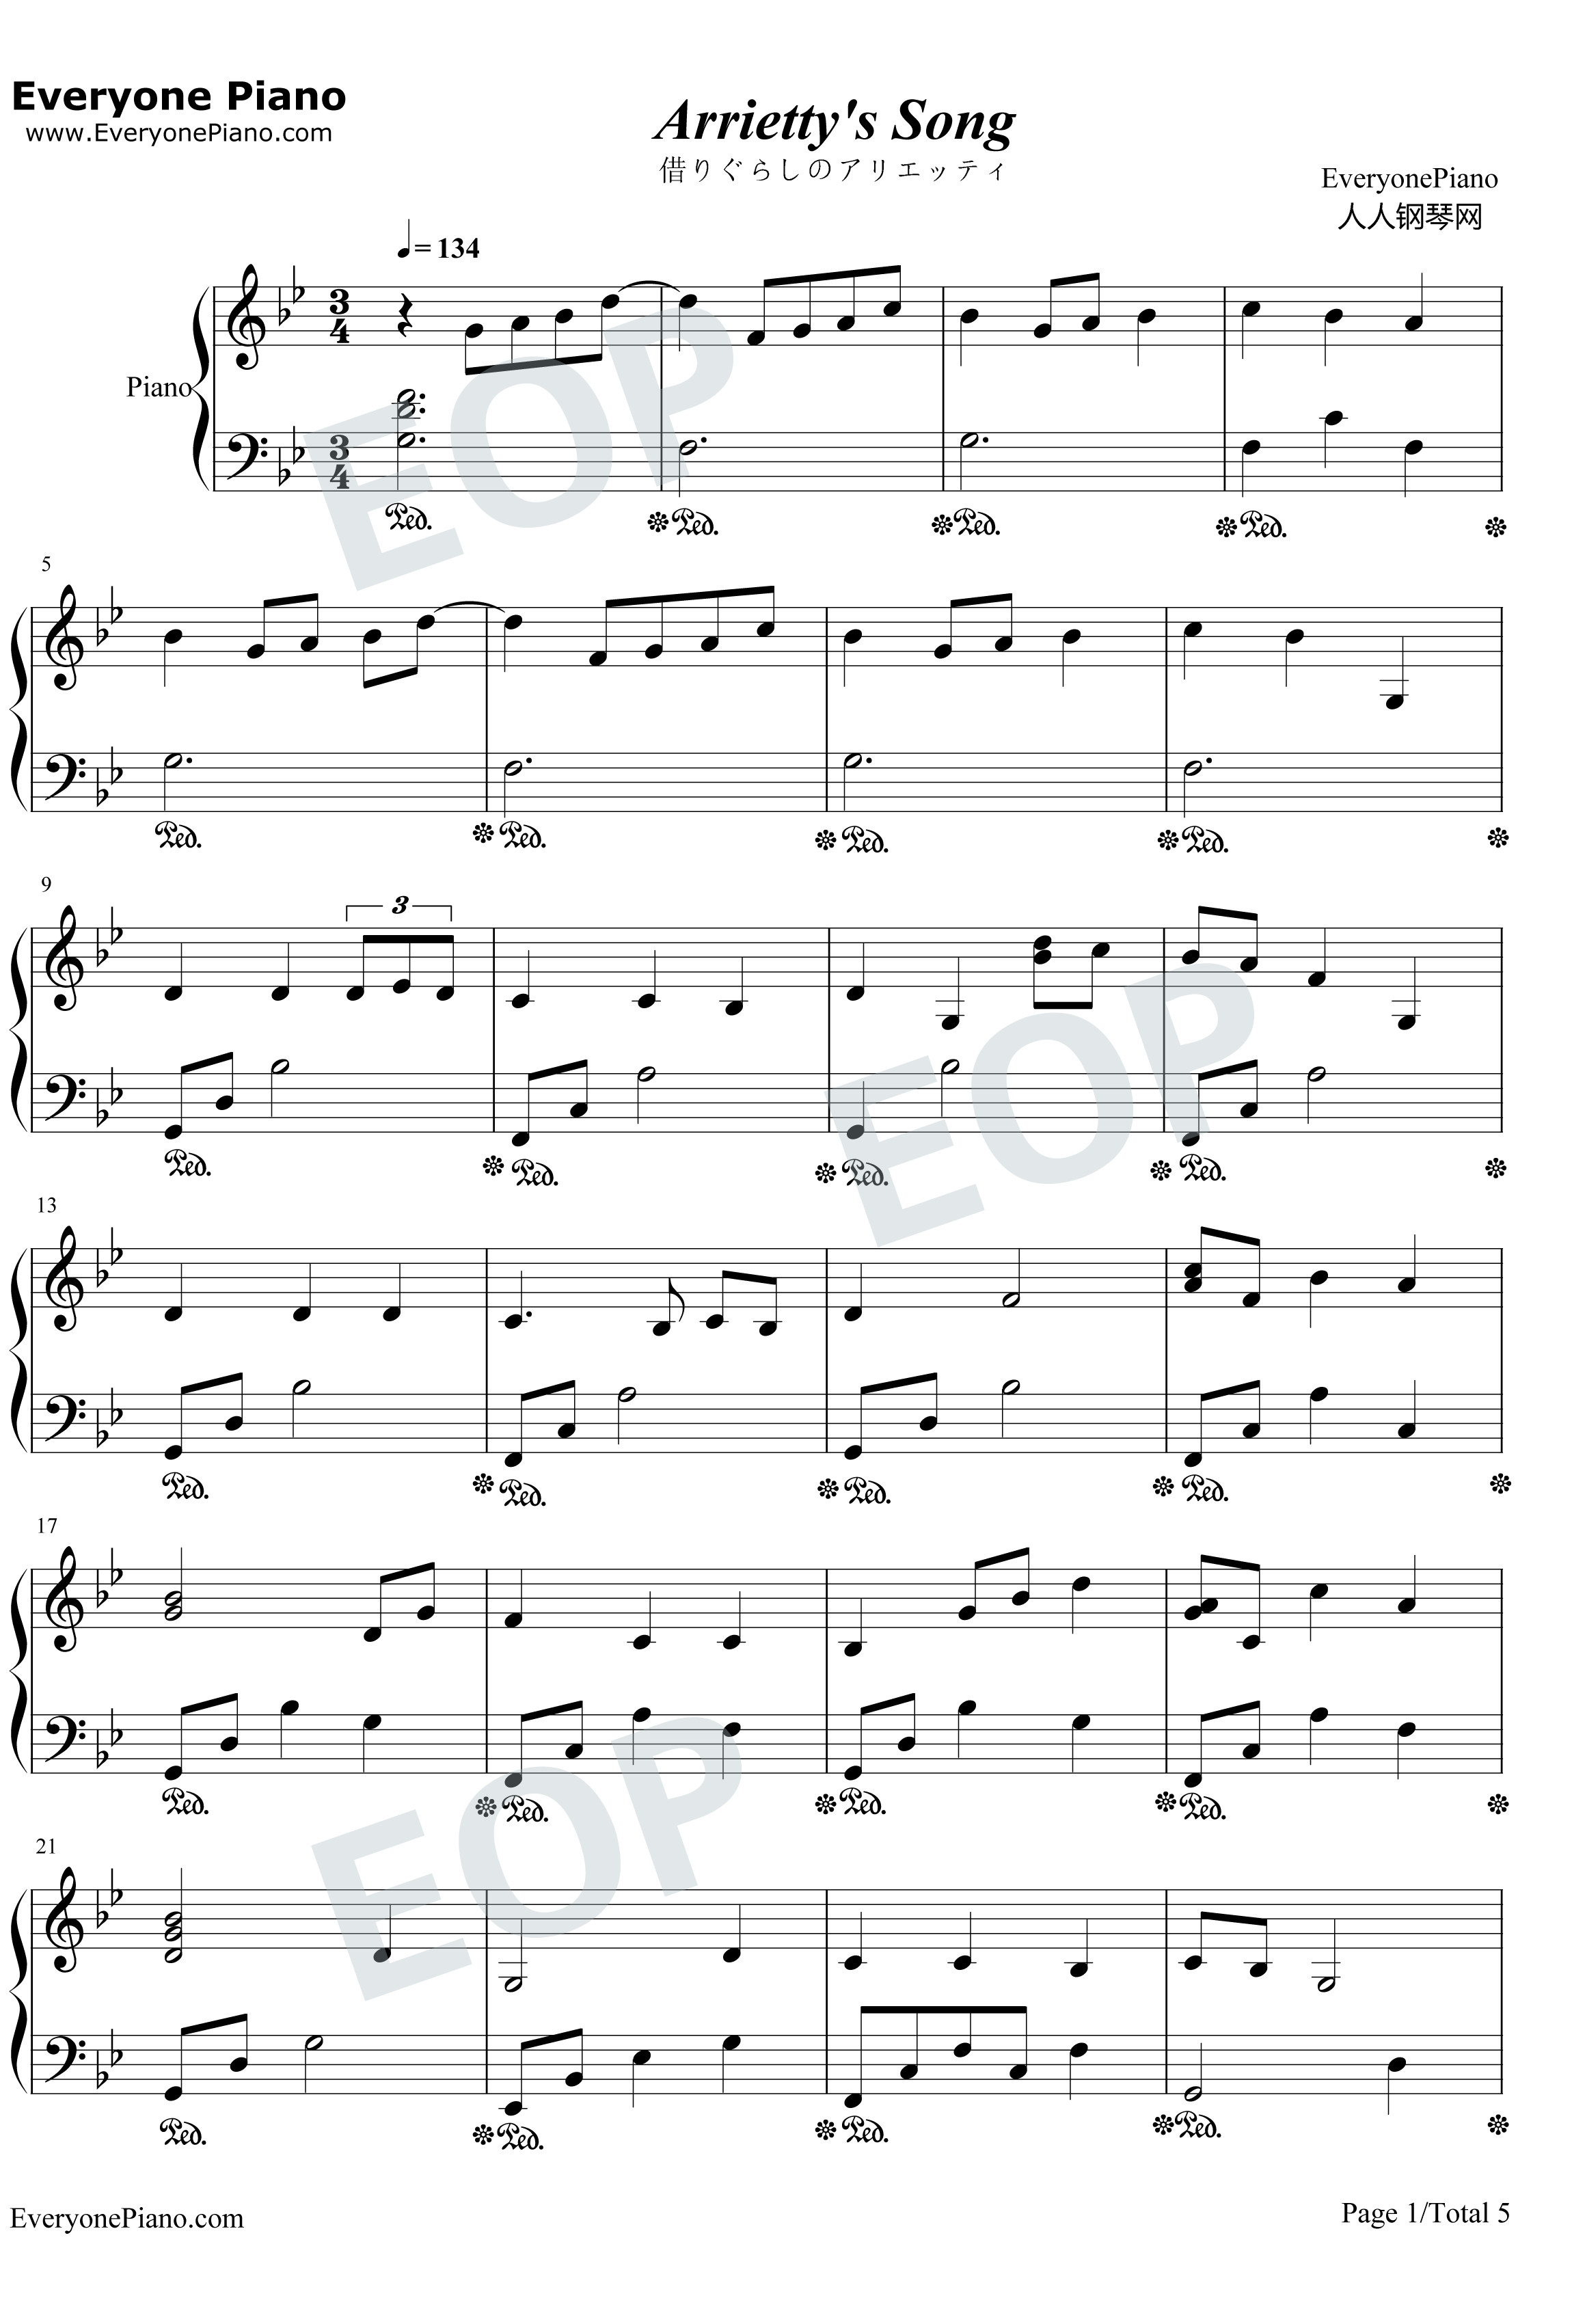 Arrietty's Song钢琴谱-塞西尔·科贝尔セシルコルベル宫崎骏-借东西的小人阿莉埃蒂-宫崎骏动画1